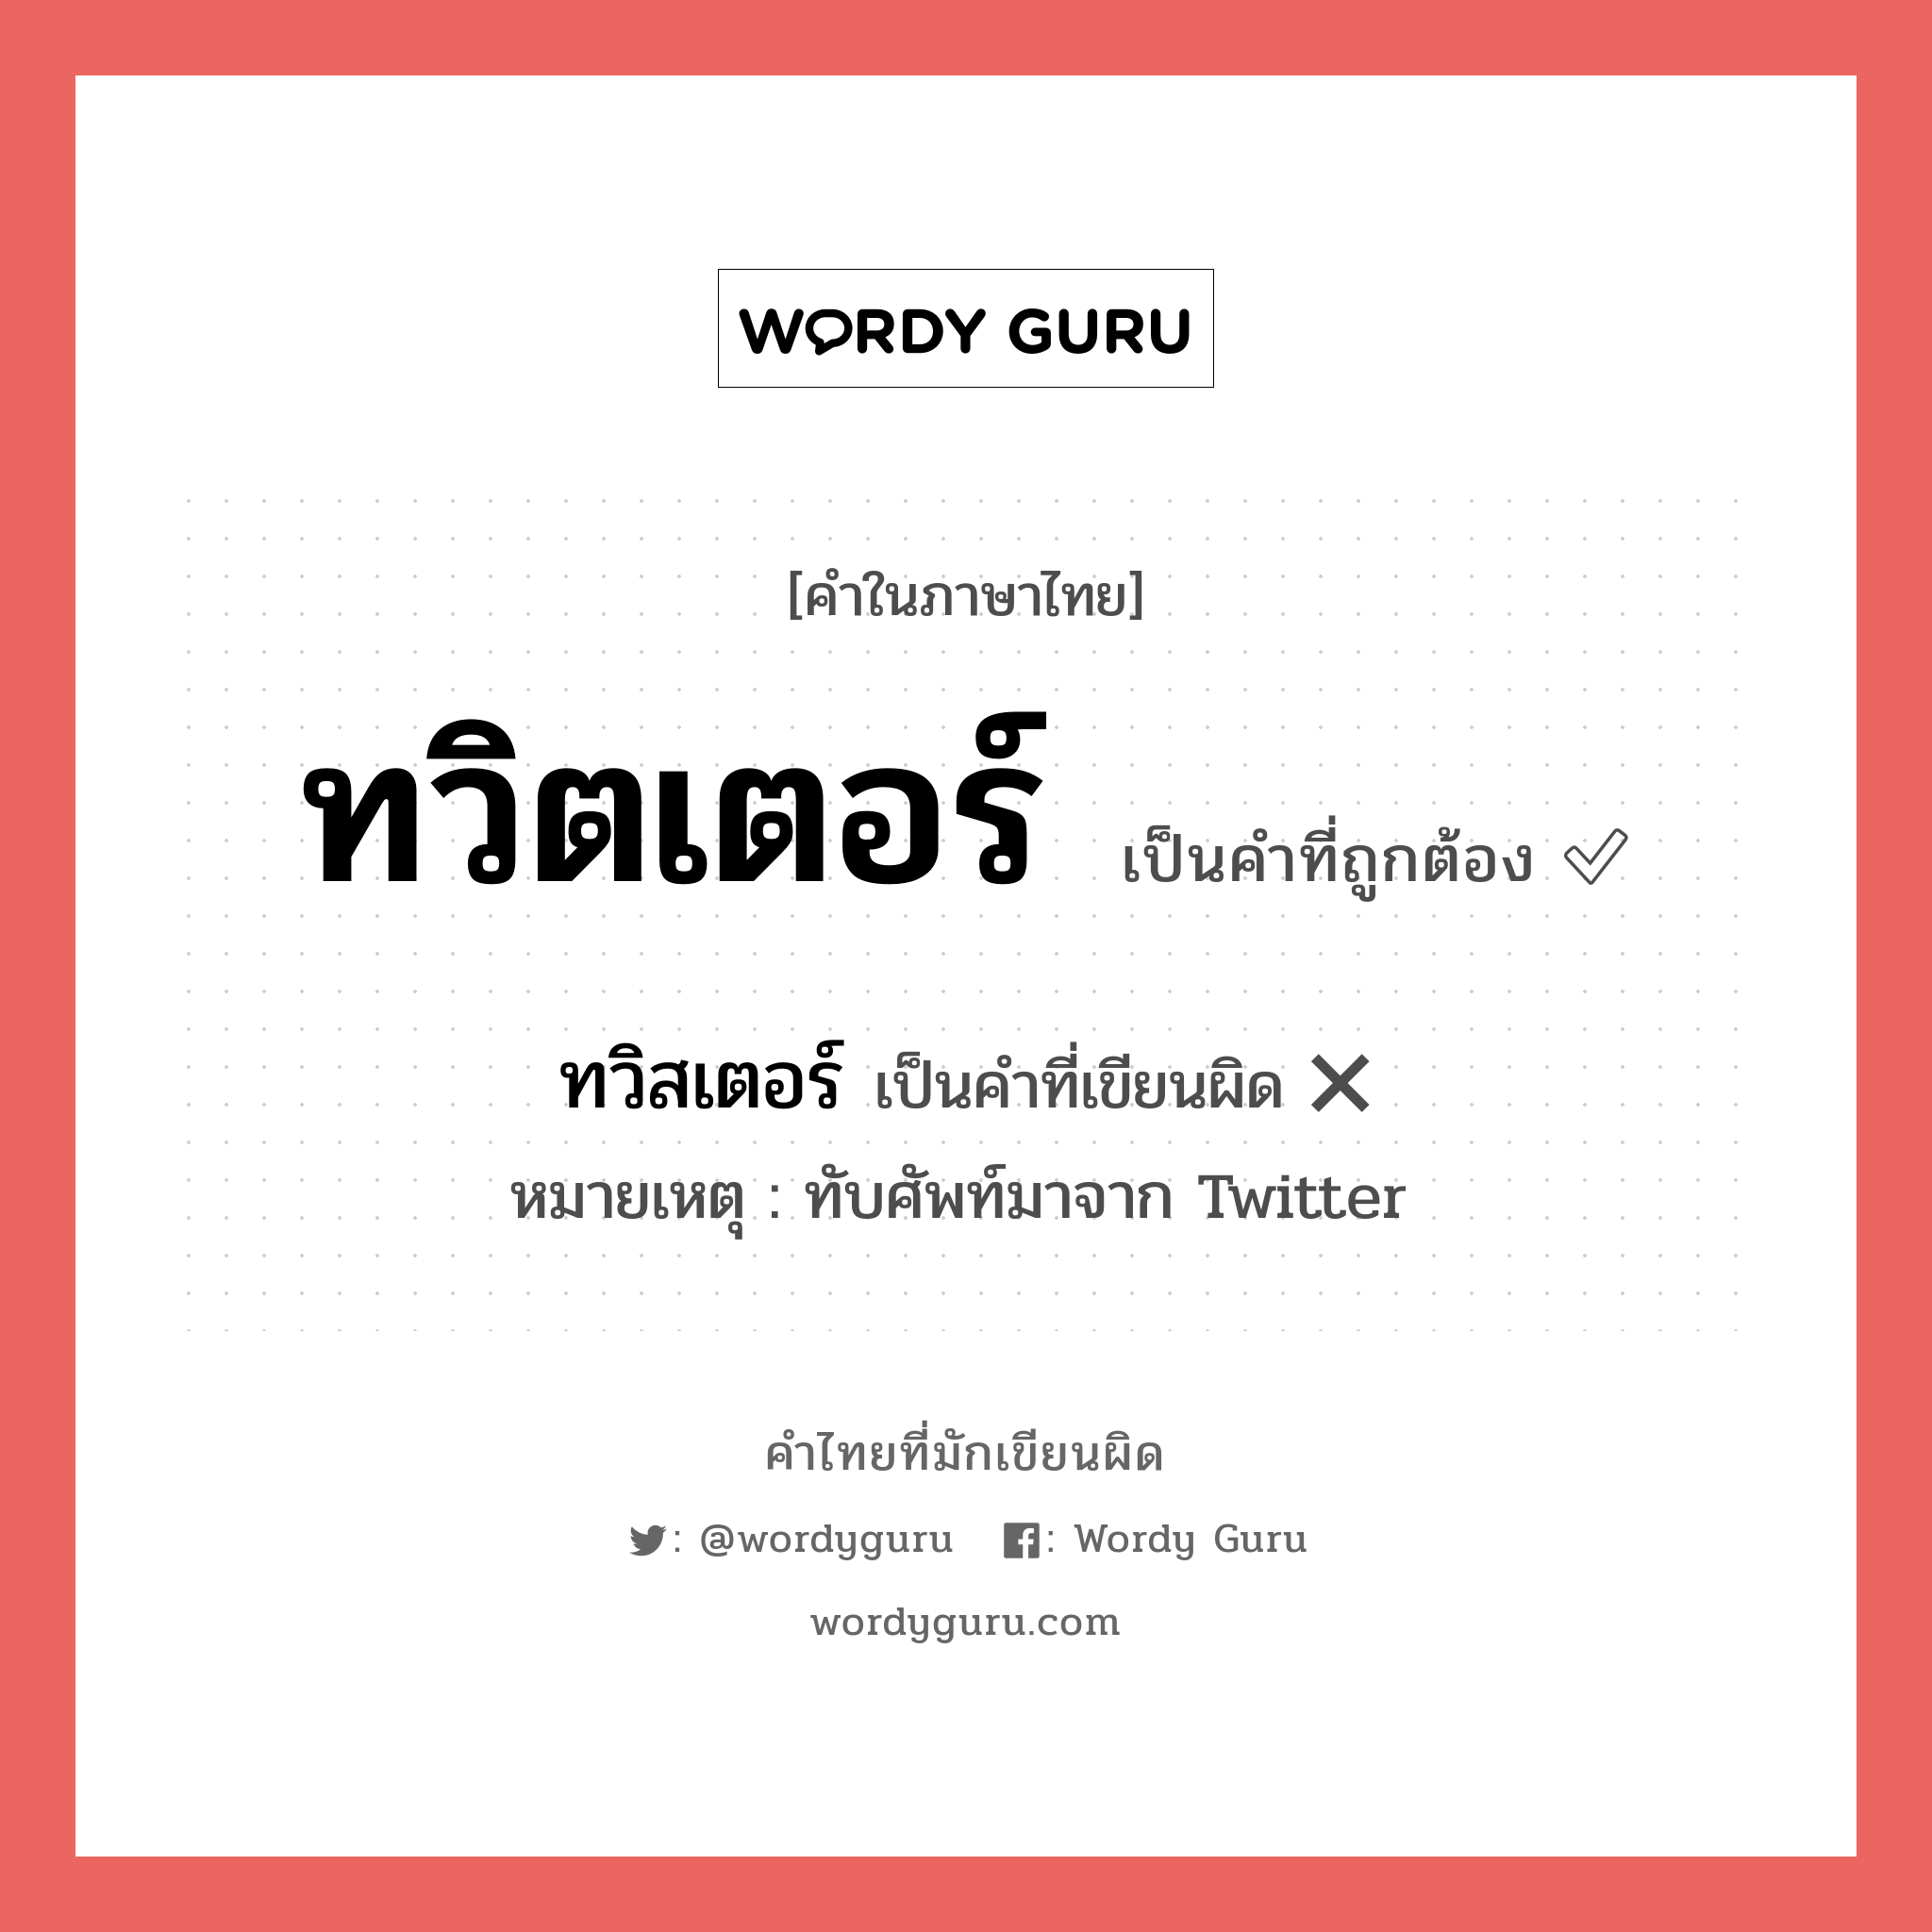 ทวิสเตอร์ หรือ ทวิตเตอร์ คำไหนเขียนถูก?, คำในภาษาไทยที่มักเขียนผิด ทวิสเตอร์ คำที่ผิด ❌ ทวิตเตอร์ หมายเหตุ ทับศัพท์มาจาก Twitter